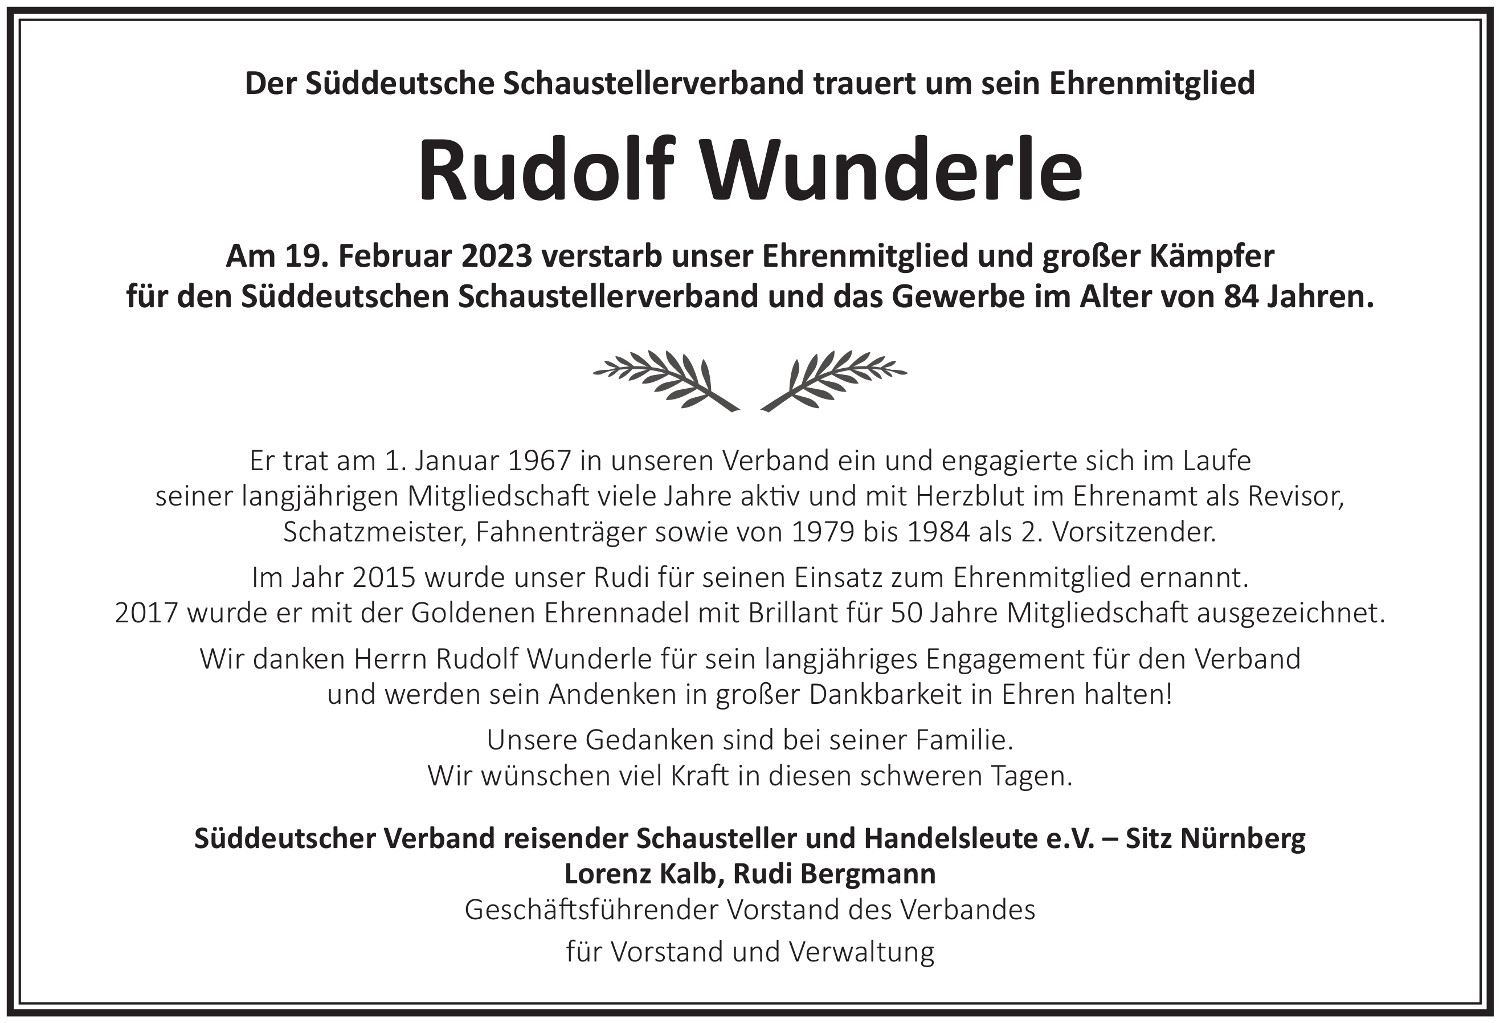 Traueranzeige Rudolf Wunderle